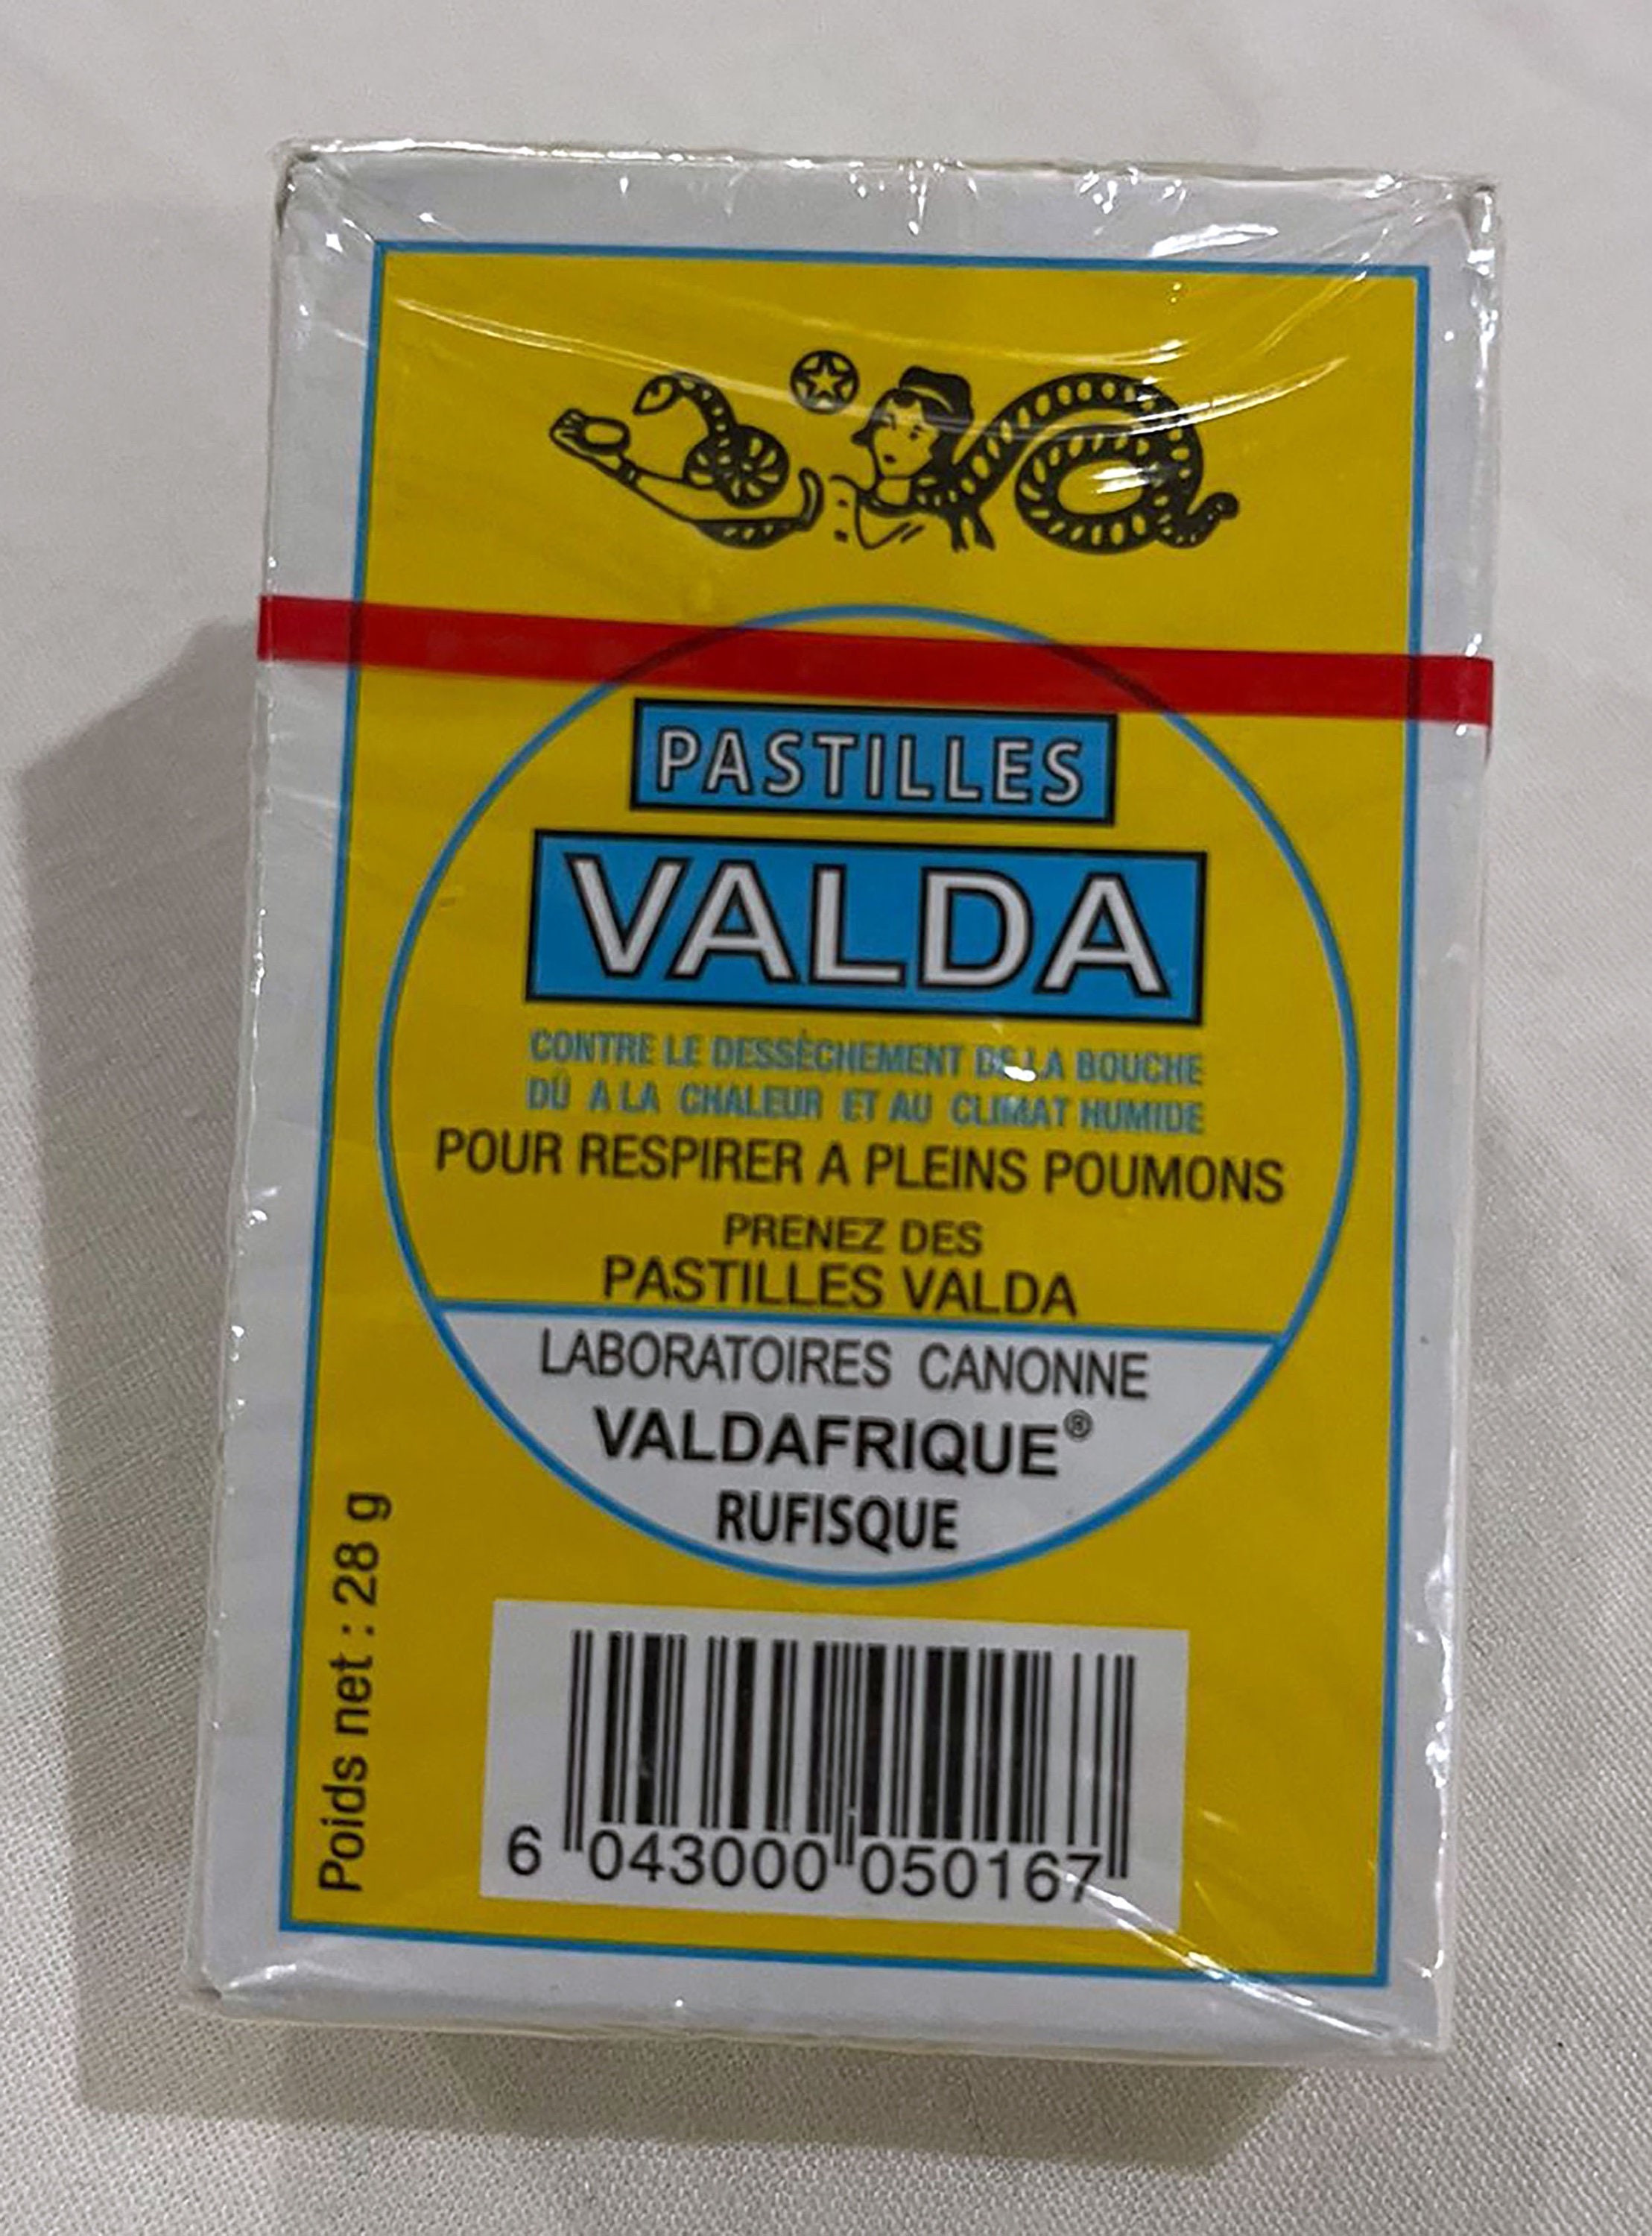 Valda Pastilles/ Valda Mint Candy/ 1 Pack of 28g Pastilles Valda